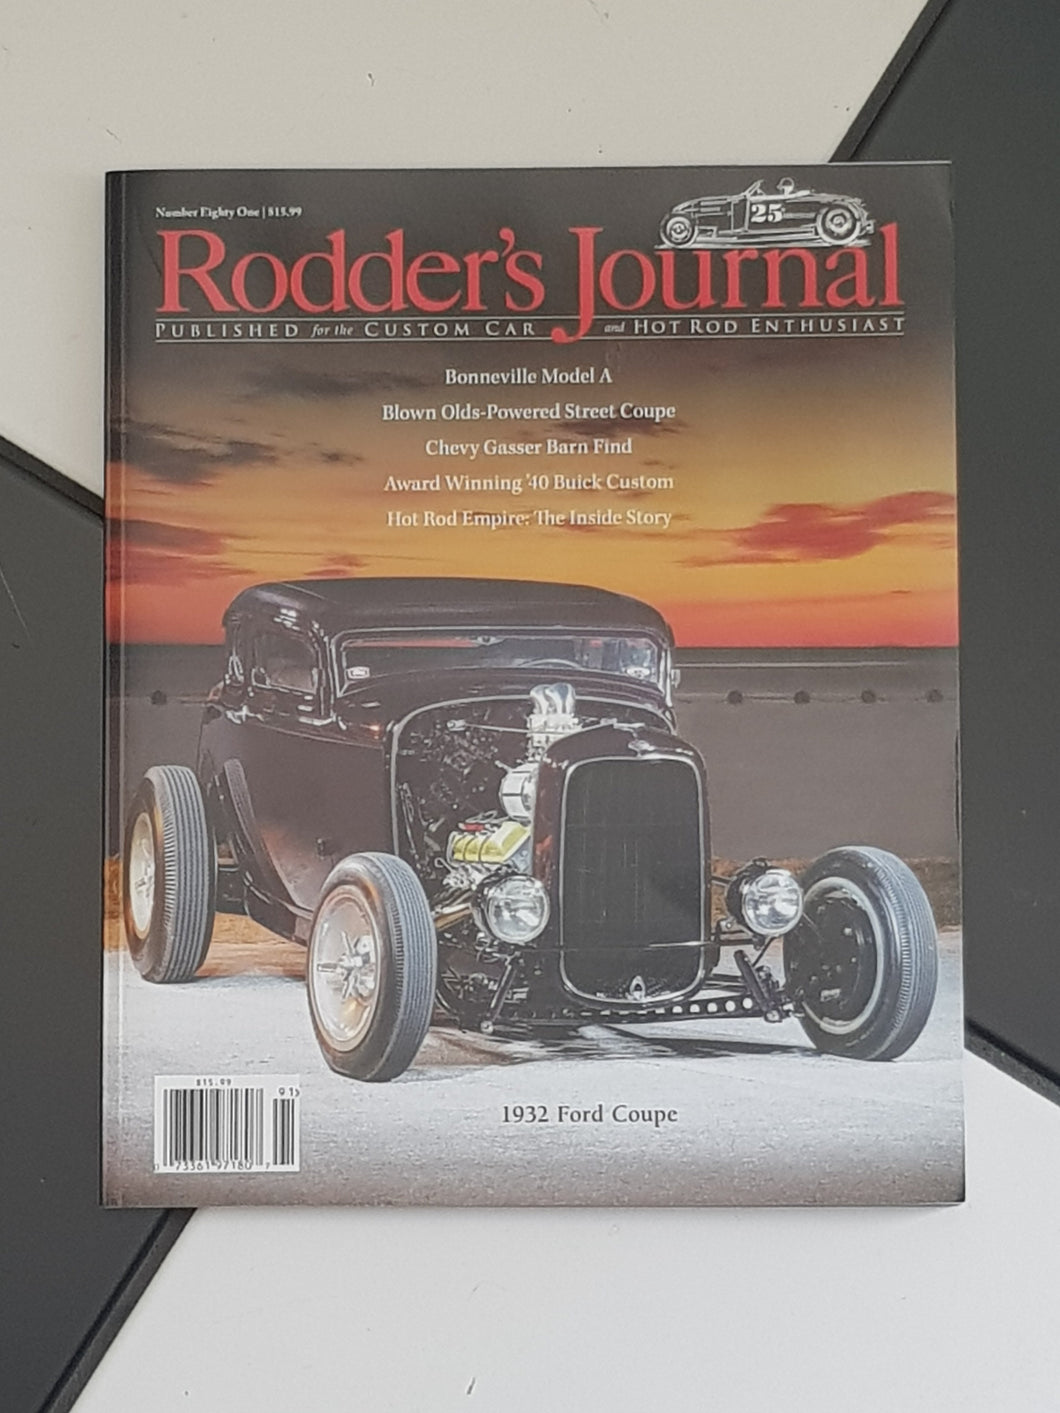 The Rodder's Journal - 81